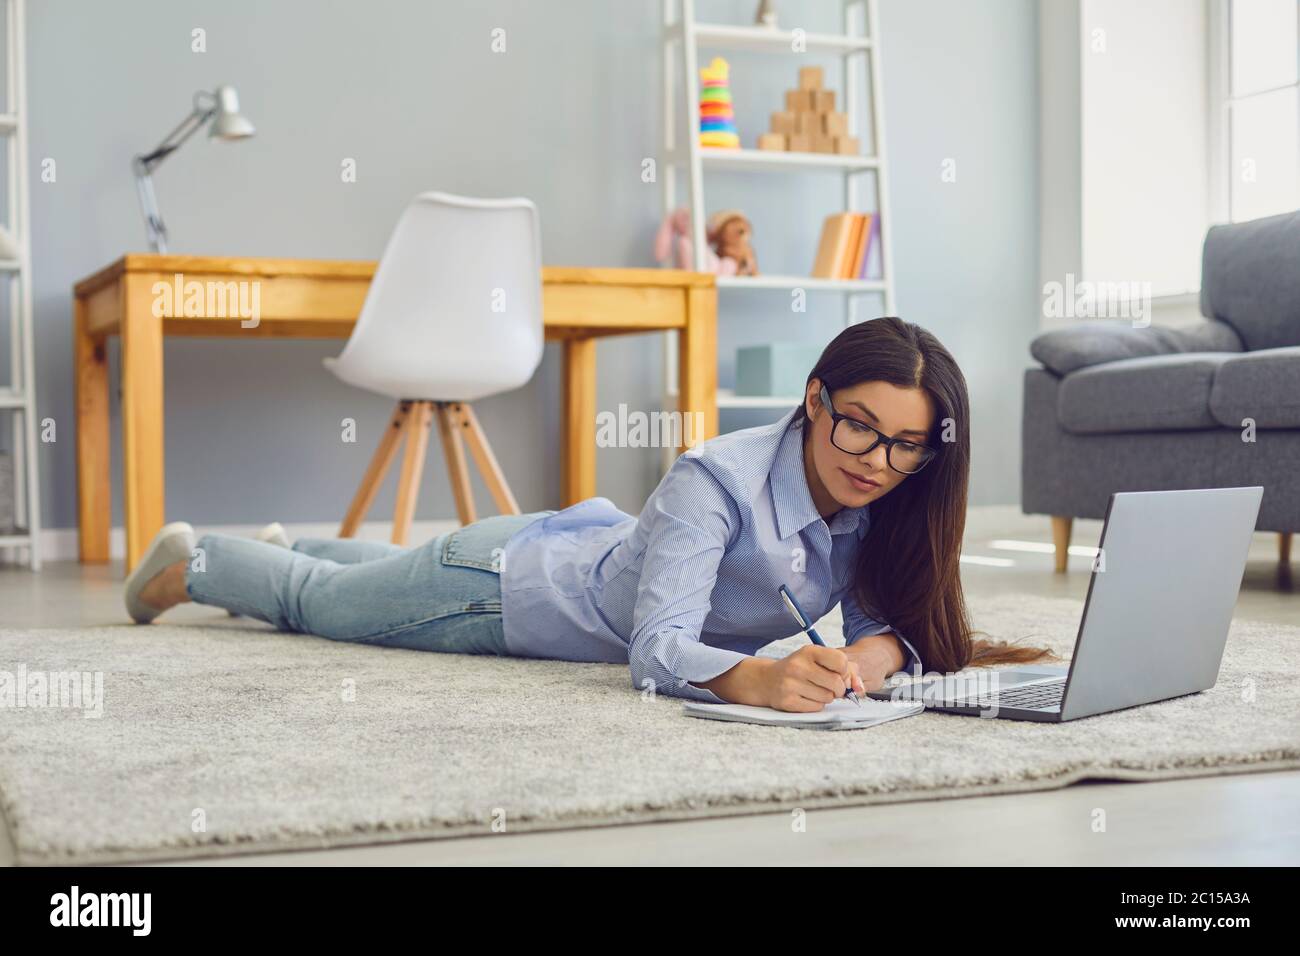 Arbeiten Sie zu Hause. Schöne Frau mit Brille, die sich während einer Online-Geschäftskonferenz oder einer Schulung auf einem Laptop im Zimmer Notizen machen Stockfoto